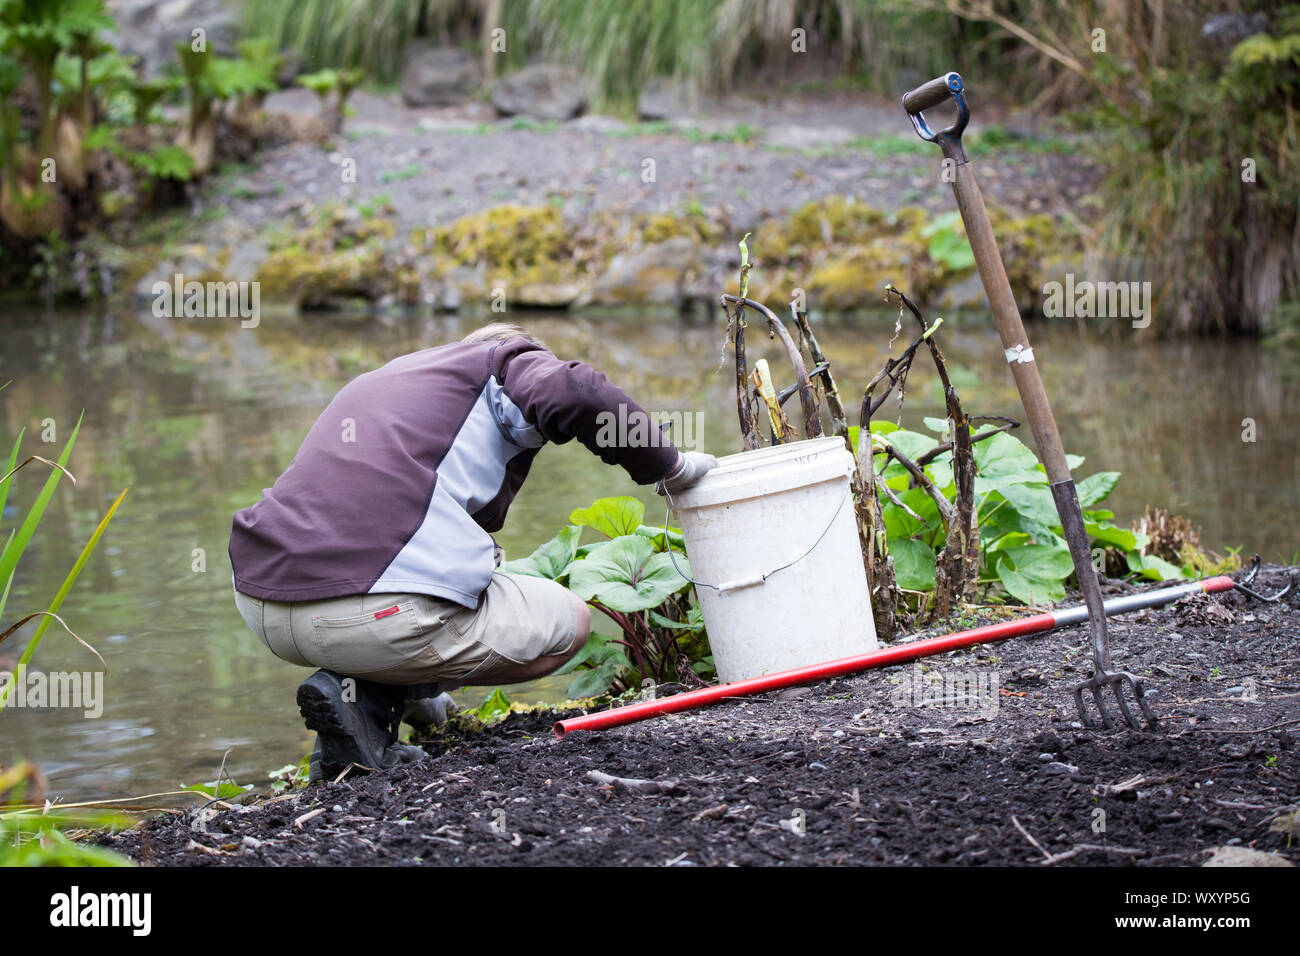 Un jardinero trabaja lejos desherbar los jardines que rodean un lago en el Jardín Botánico de Christchurch, Nueva Zelanda Foto de stock